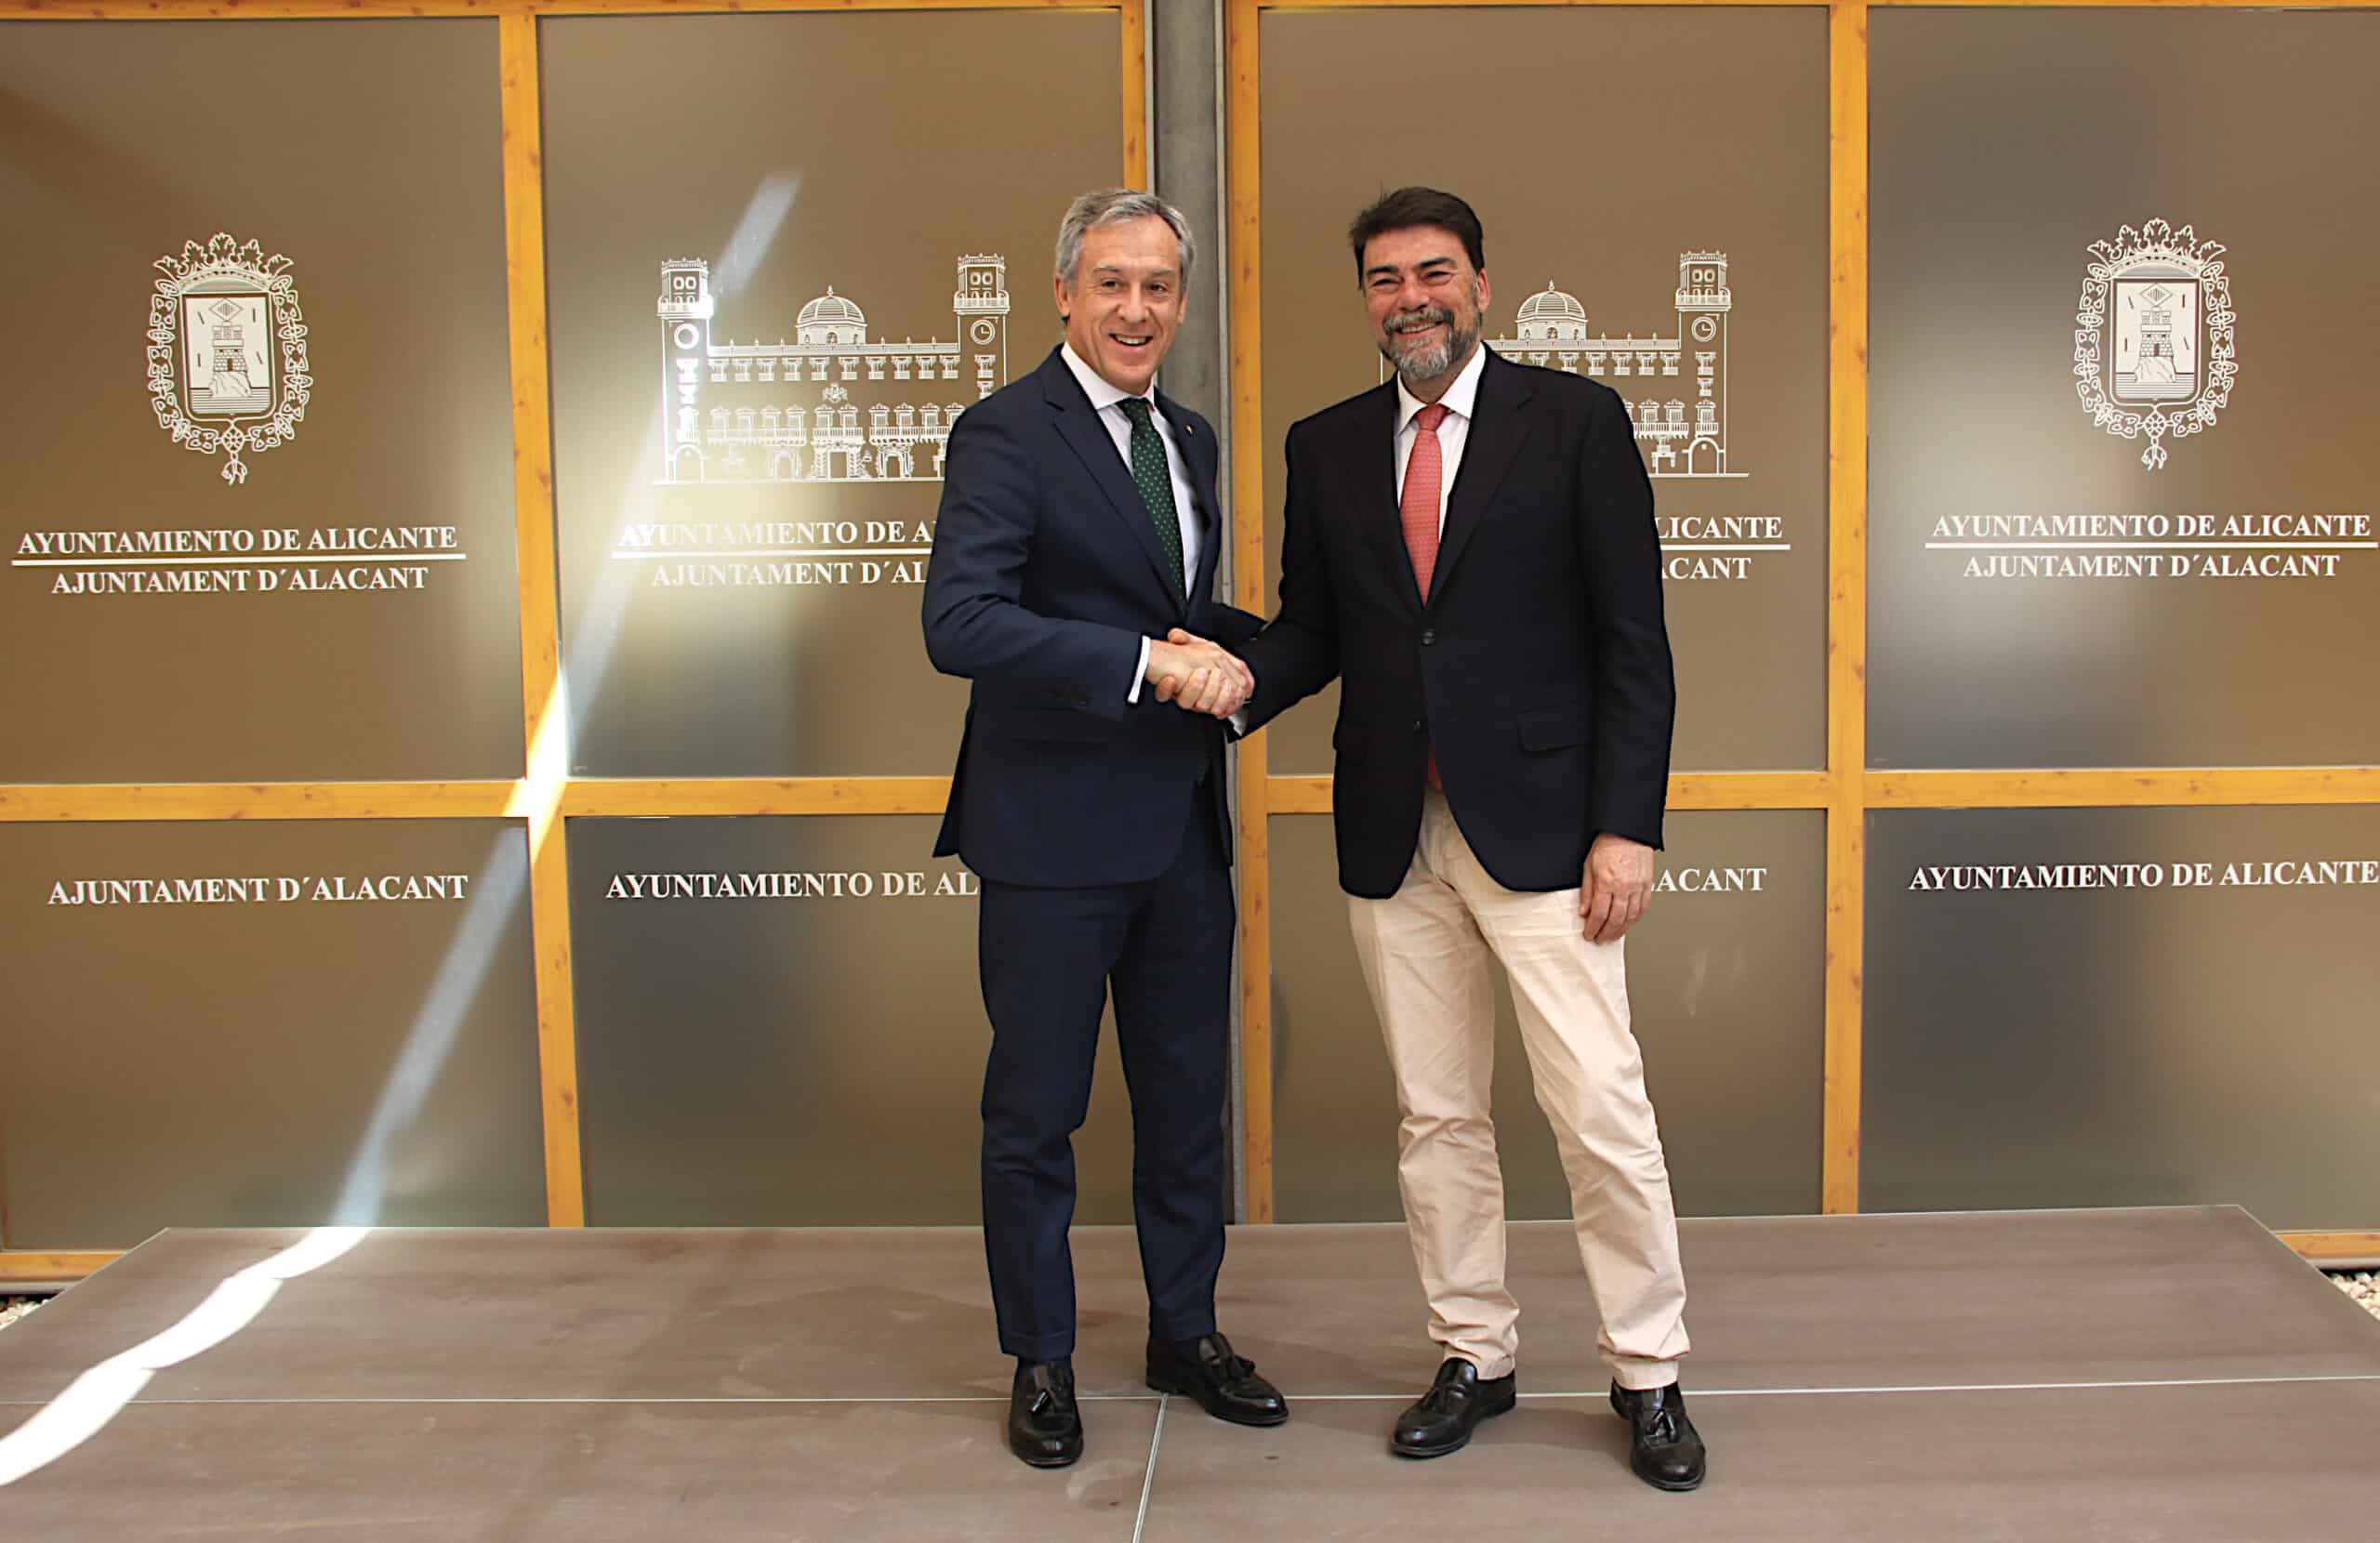 Alicante y Eurocaja Rural estrechan lazos para fomentar el desarrollo  de la ciudad